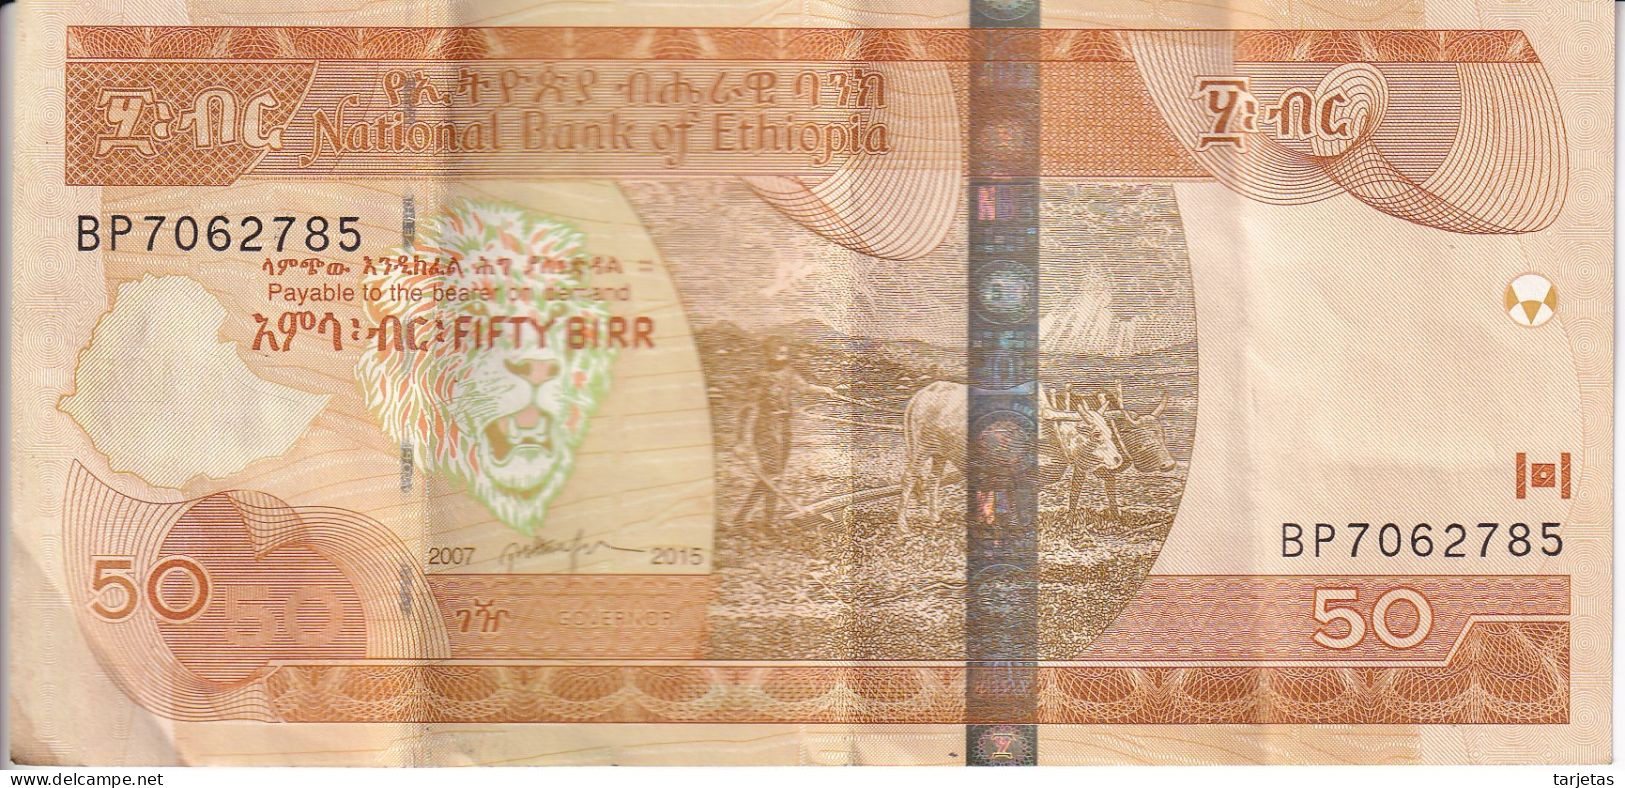 BILLETE DE ETIOPIA DE 50 BIRR DEL AÑO 2007 (BANK NOTE) - Etiopía